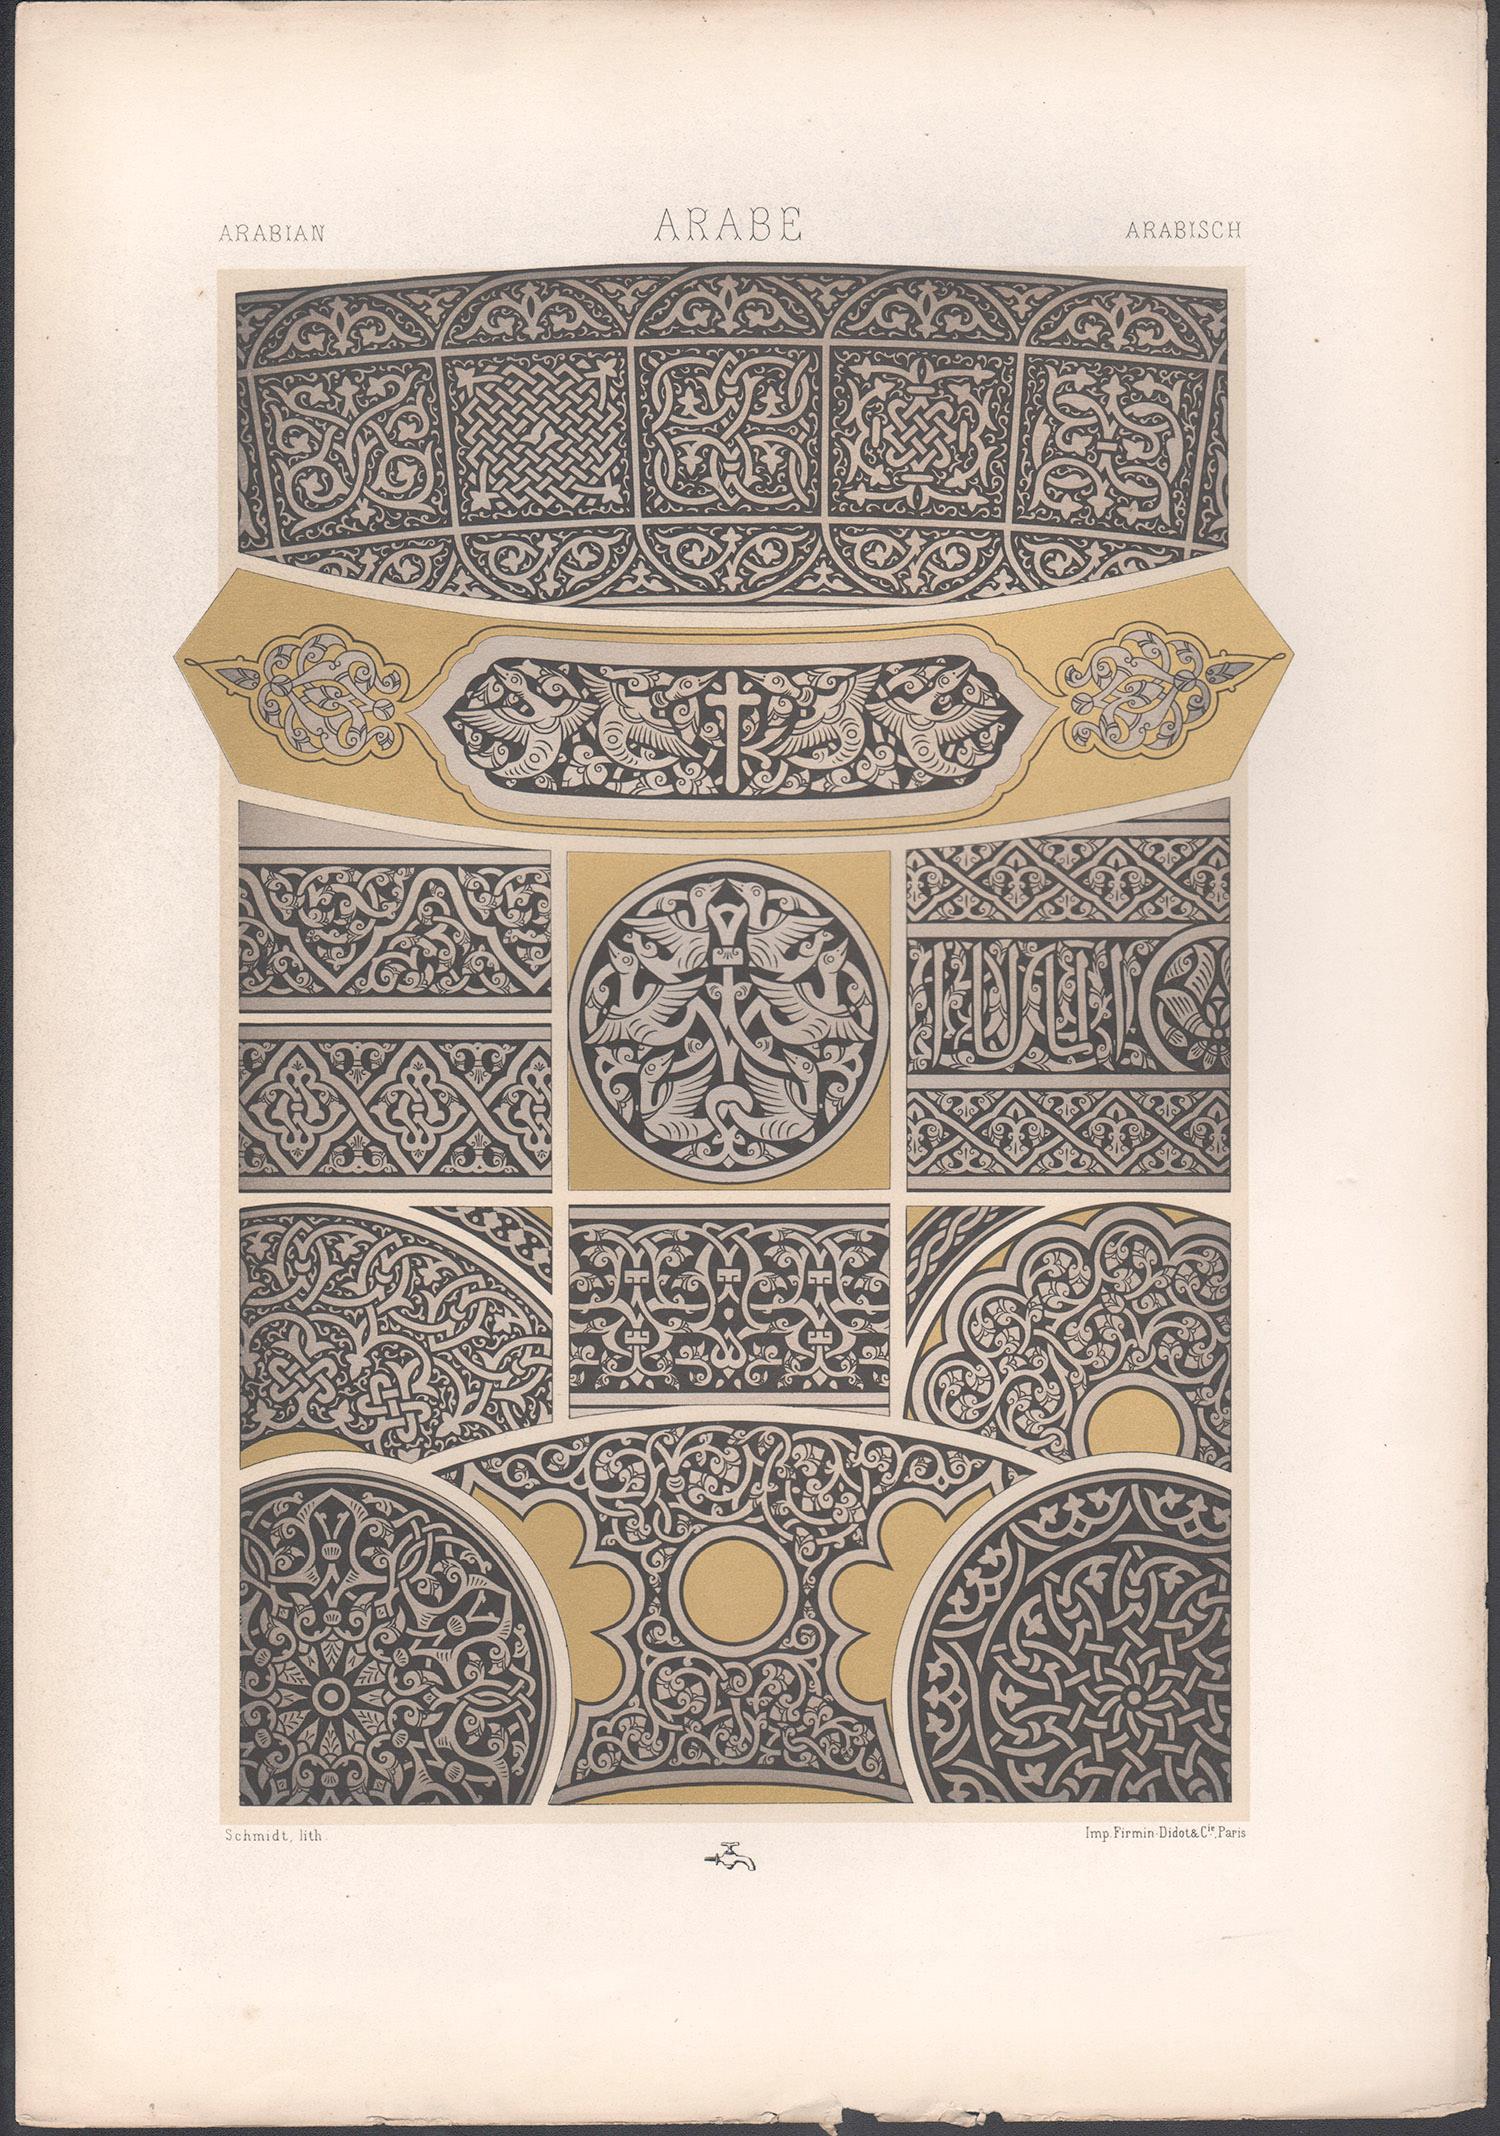 Arabianischer, französischer antiker Racinet-Kunstdesign-Lithographiendruck aus dem 19. Jahrhundert – Print von Albert-Charles-Auguste Racinet